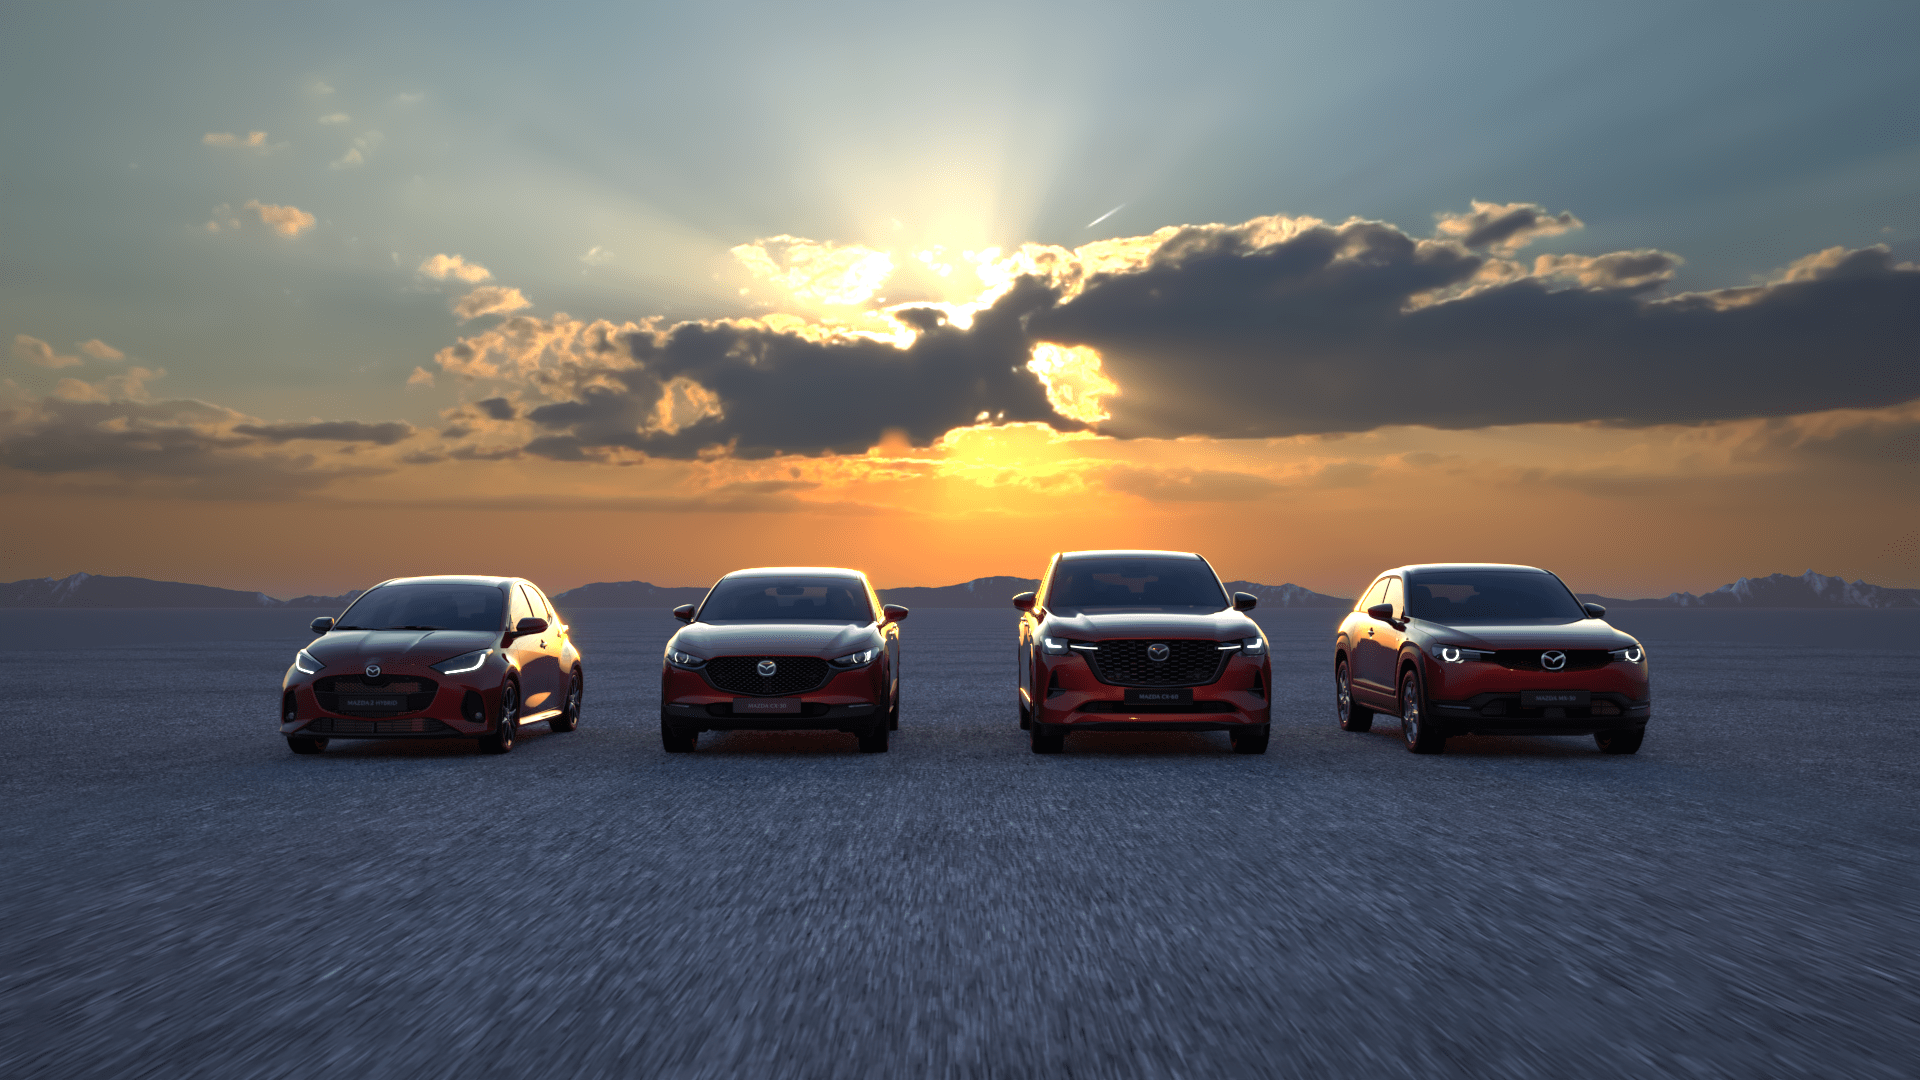 Mazda modeller